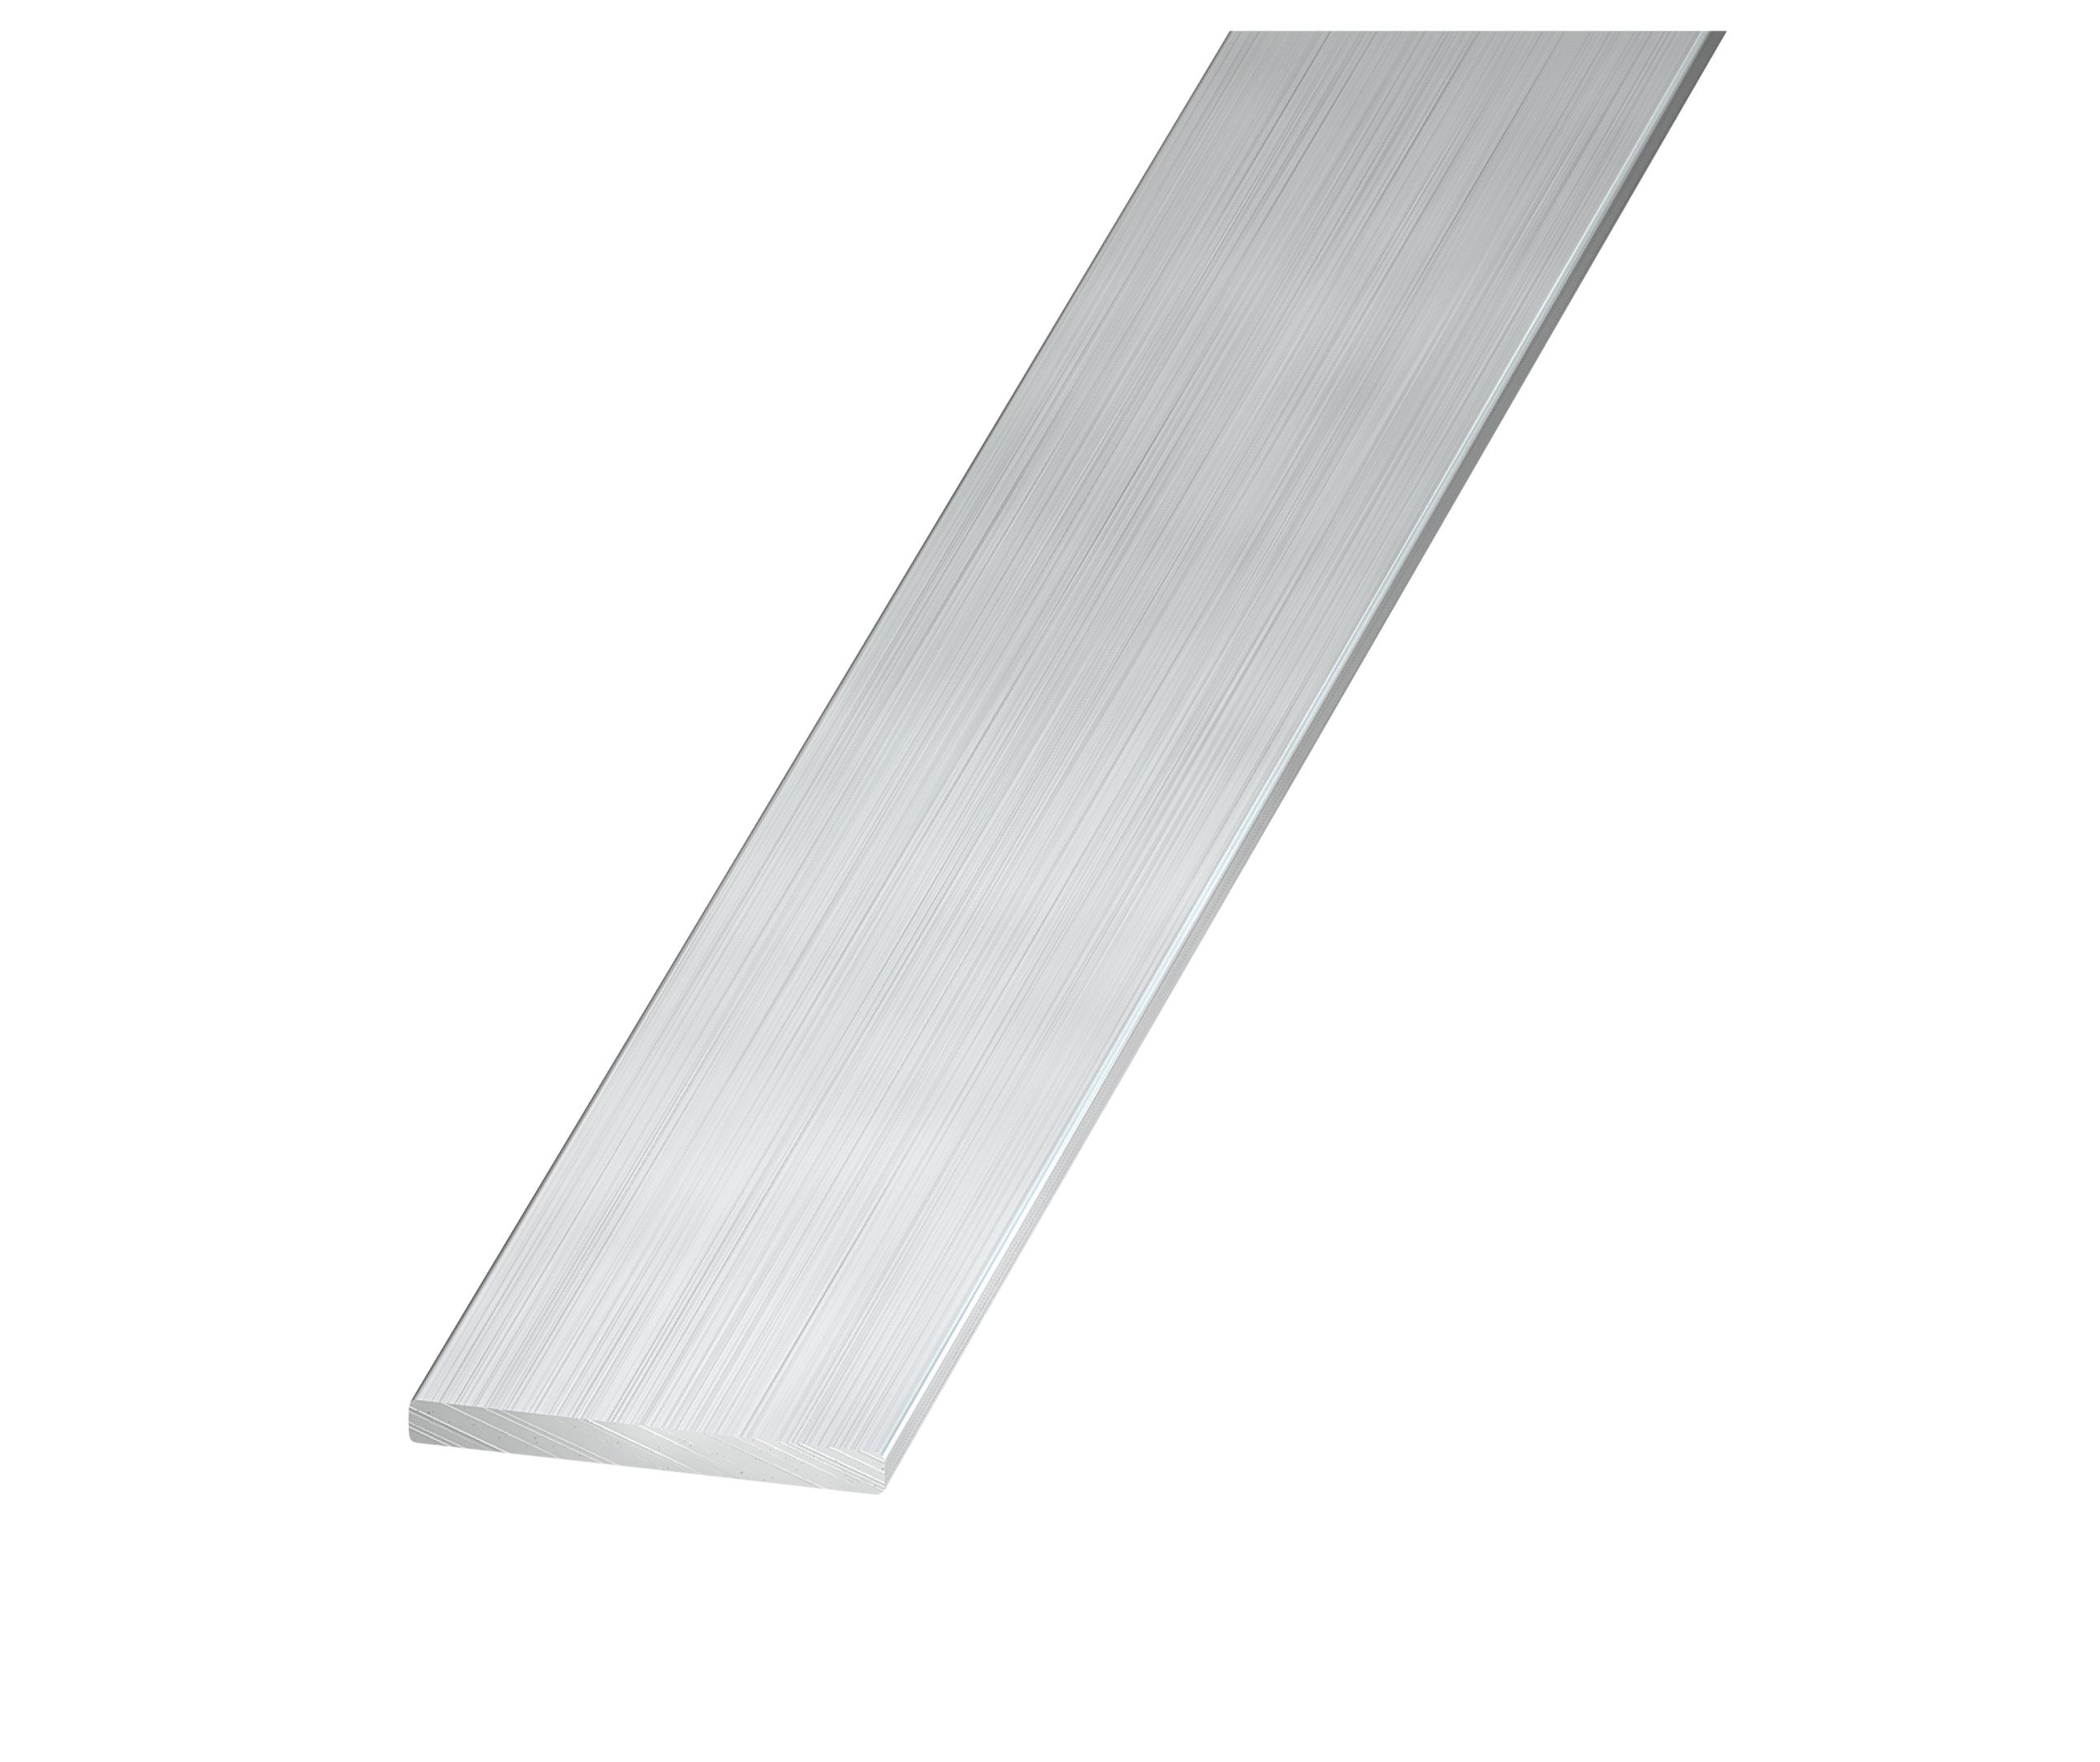 WLALLSS Flat Bar Aluminium Sheet Metal Strips,Various Sizes,Length is 500mm  (5 Pieces),4mm x 15mm x 500mm